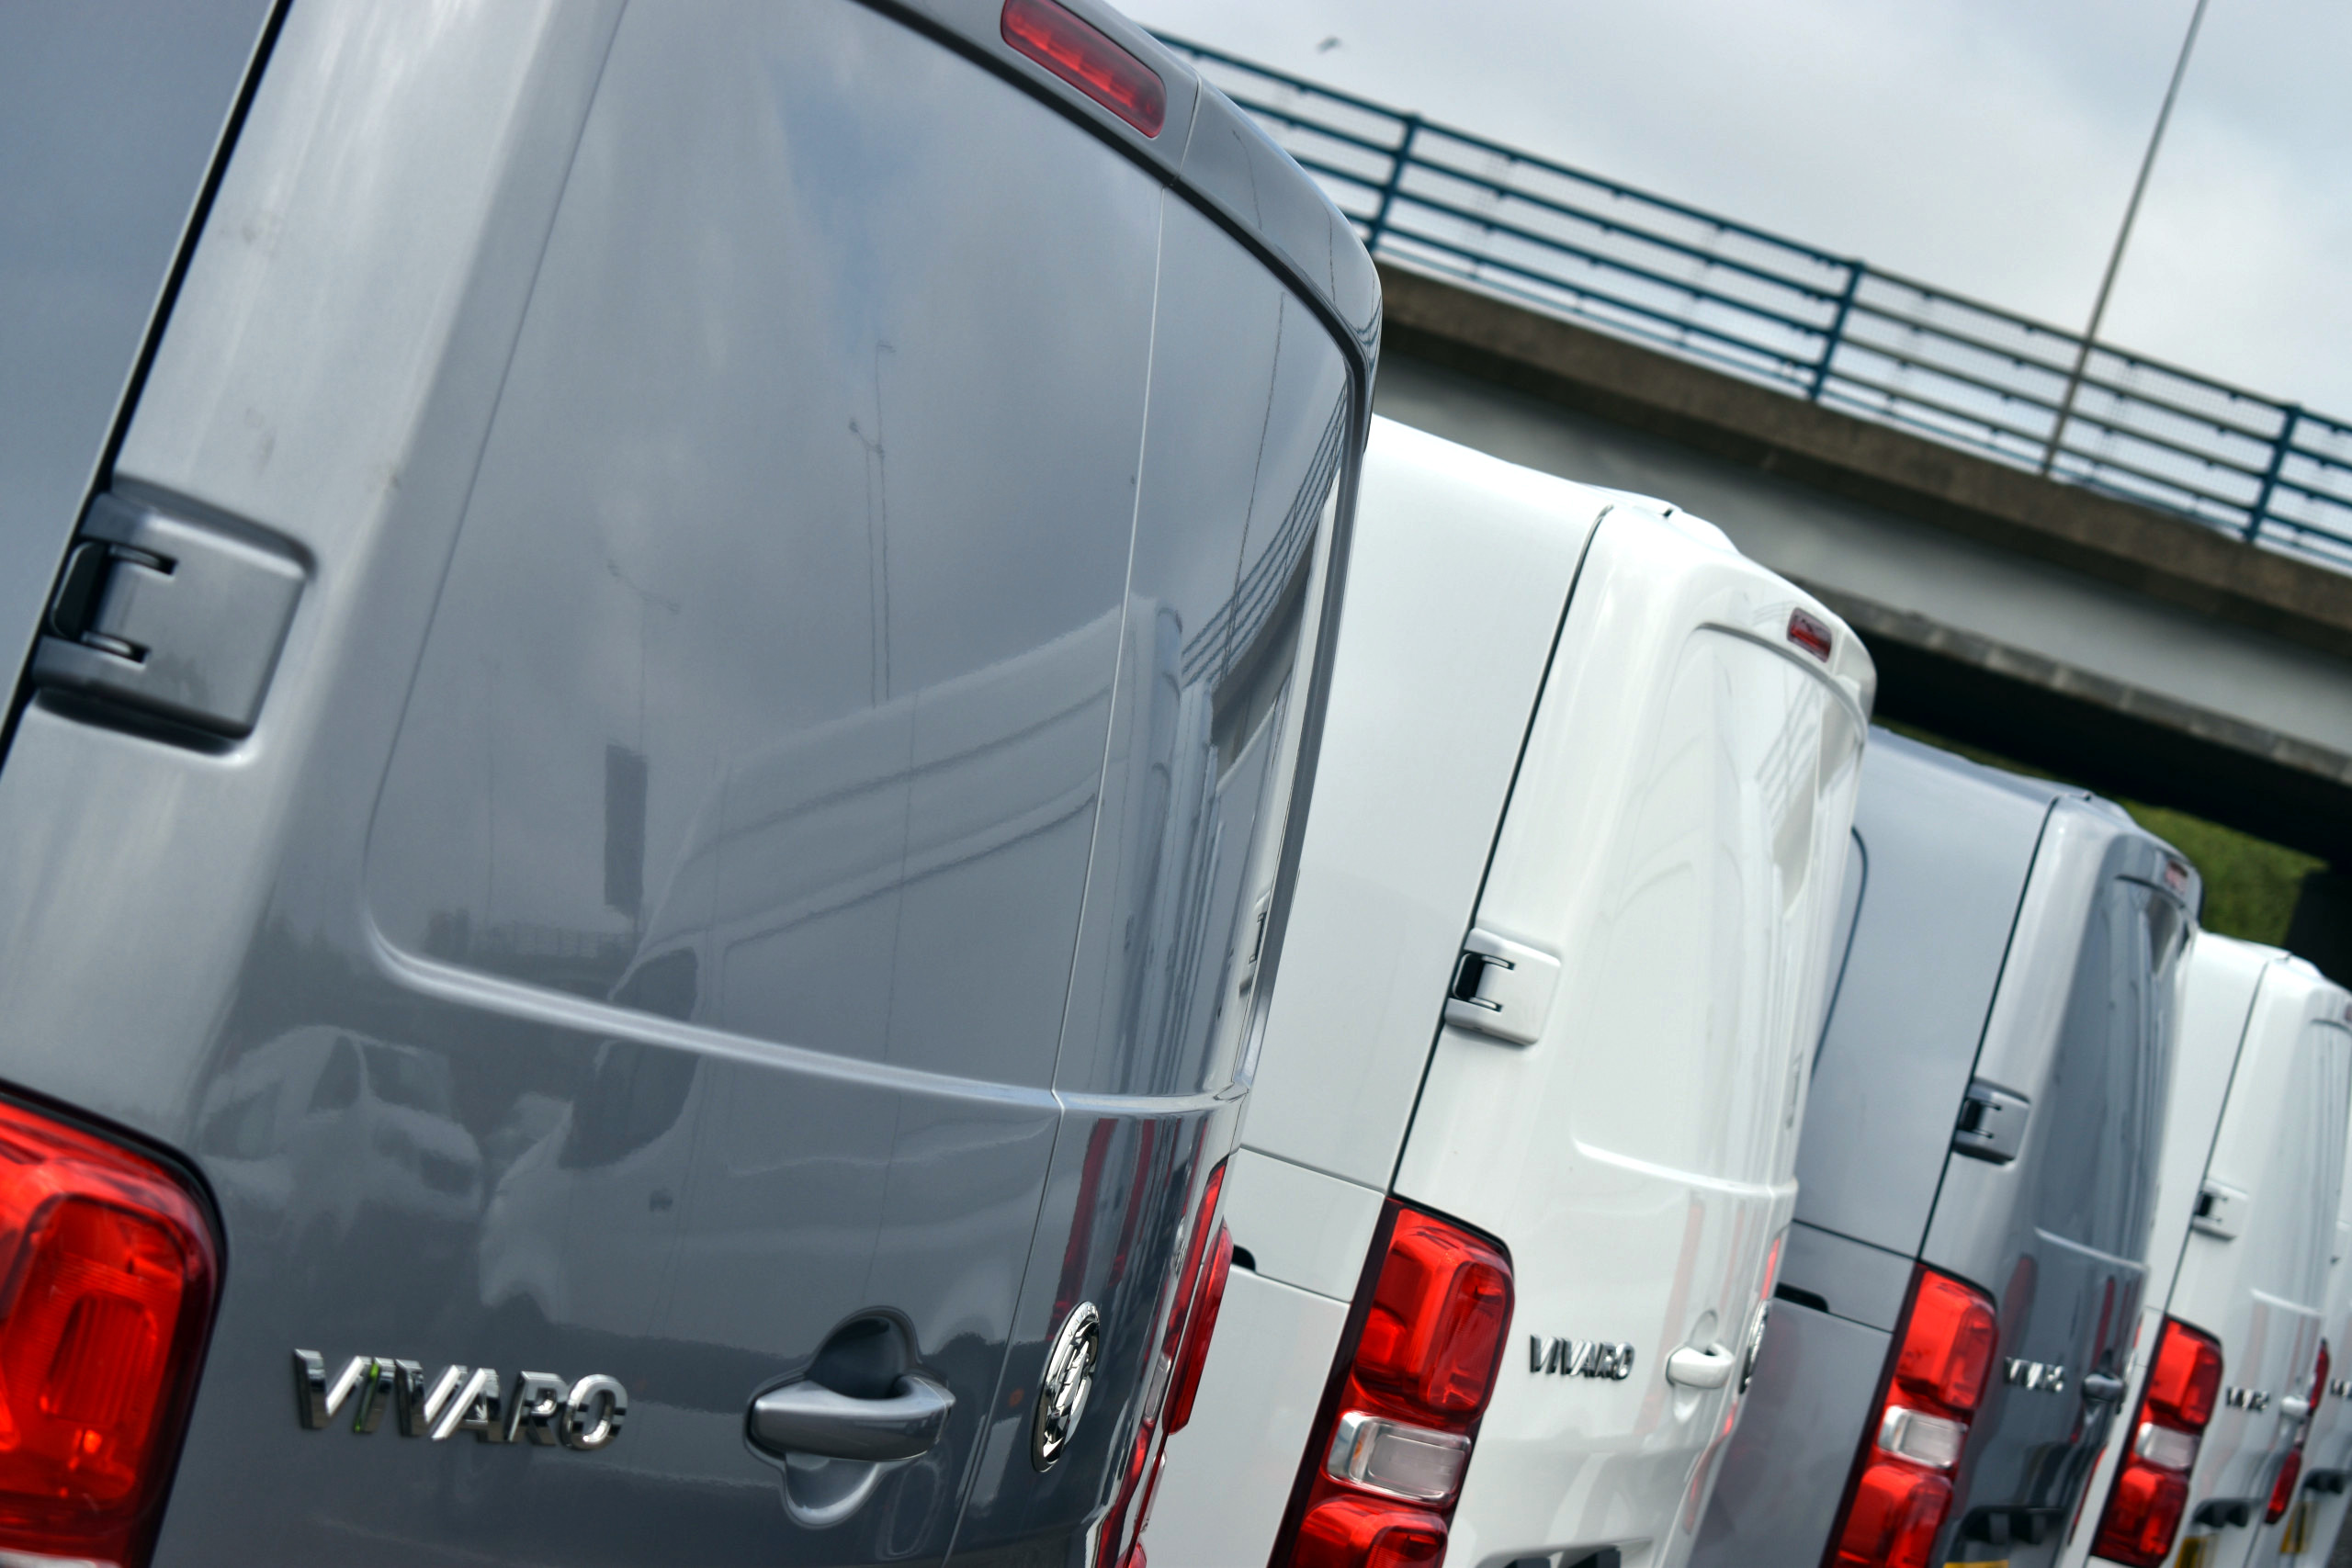 Vauxhall Vivaro – A Great Medium Van Lease Option